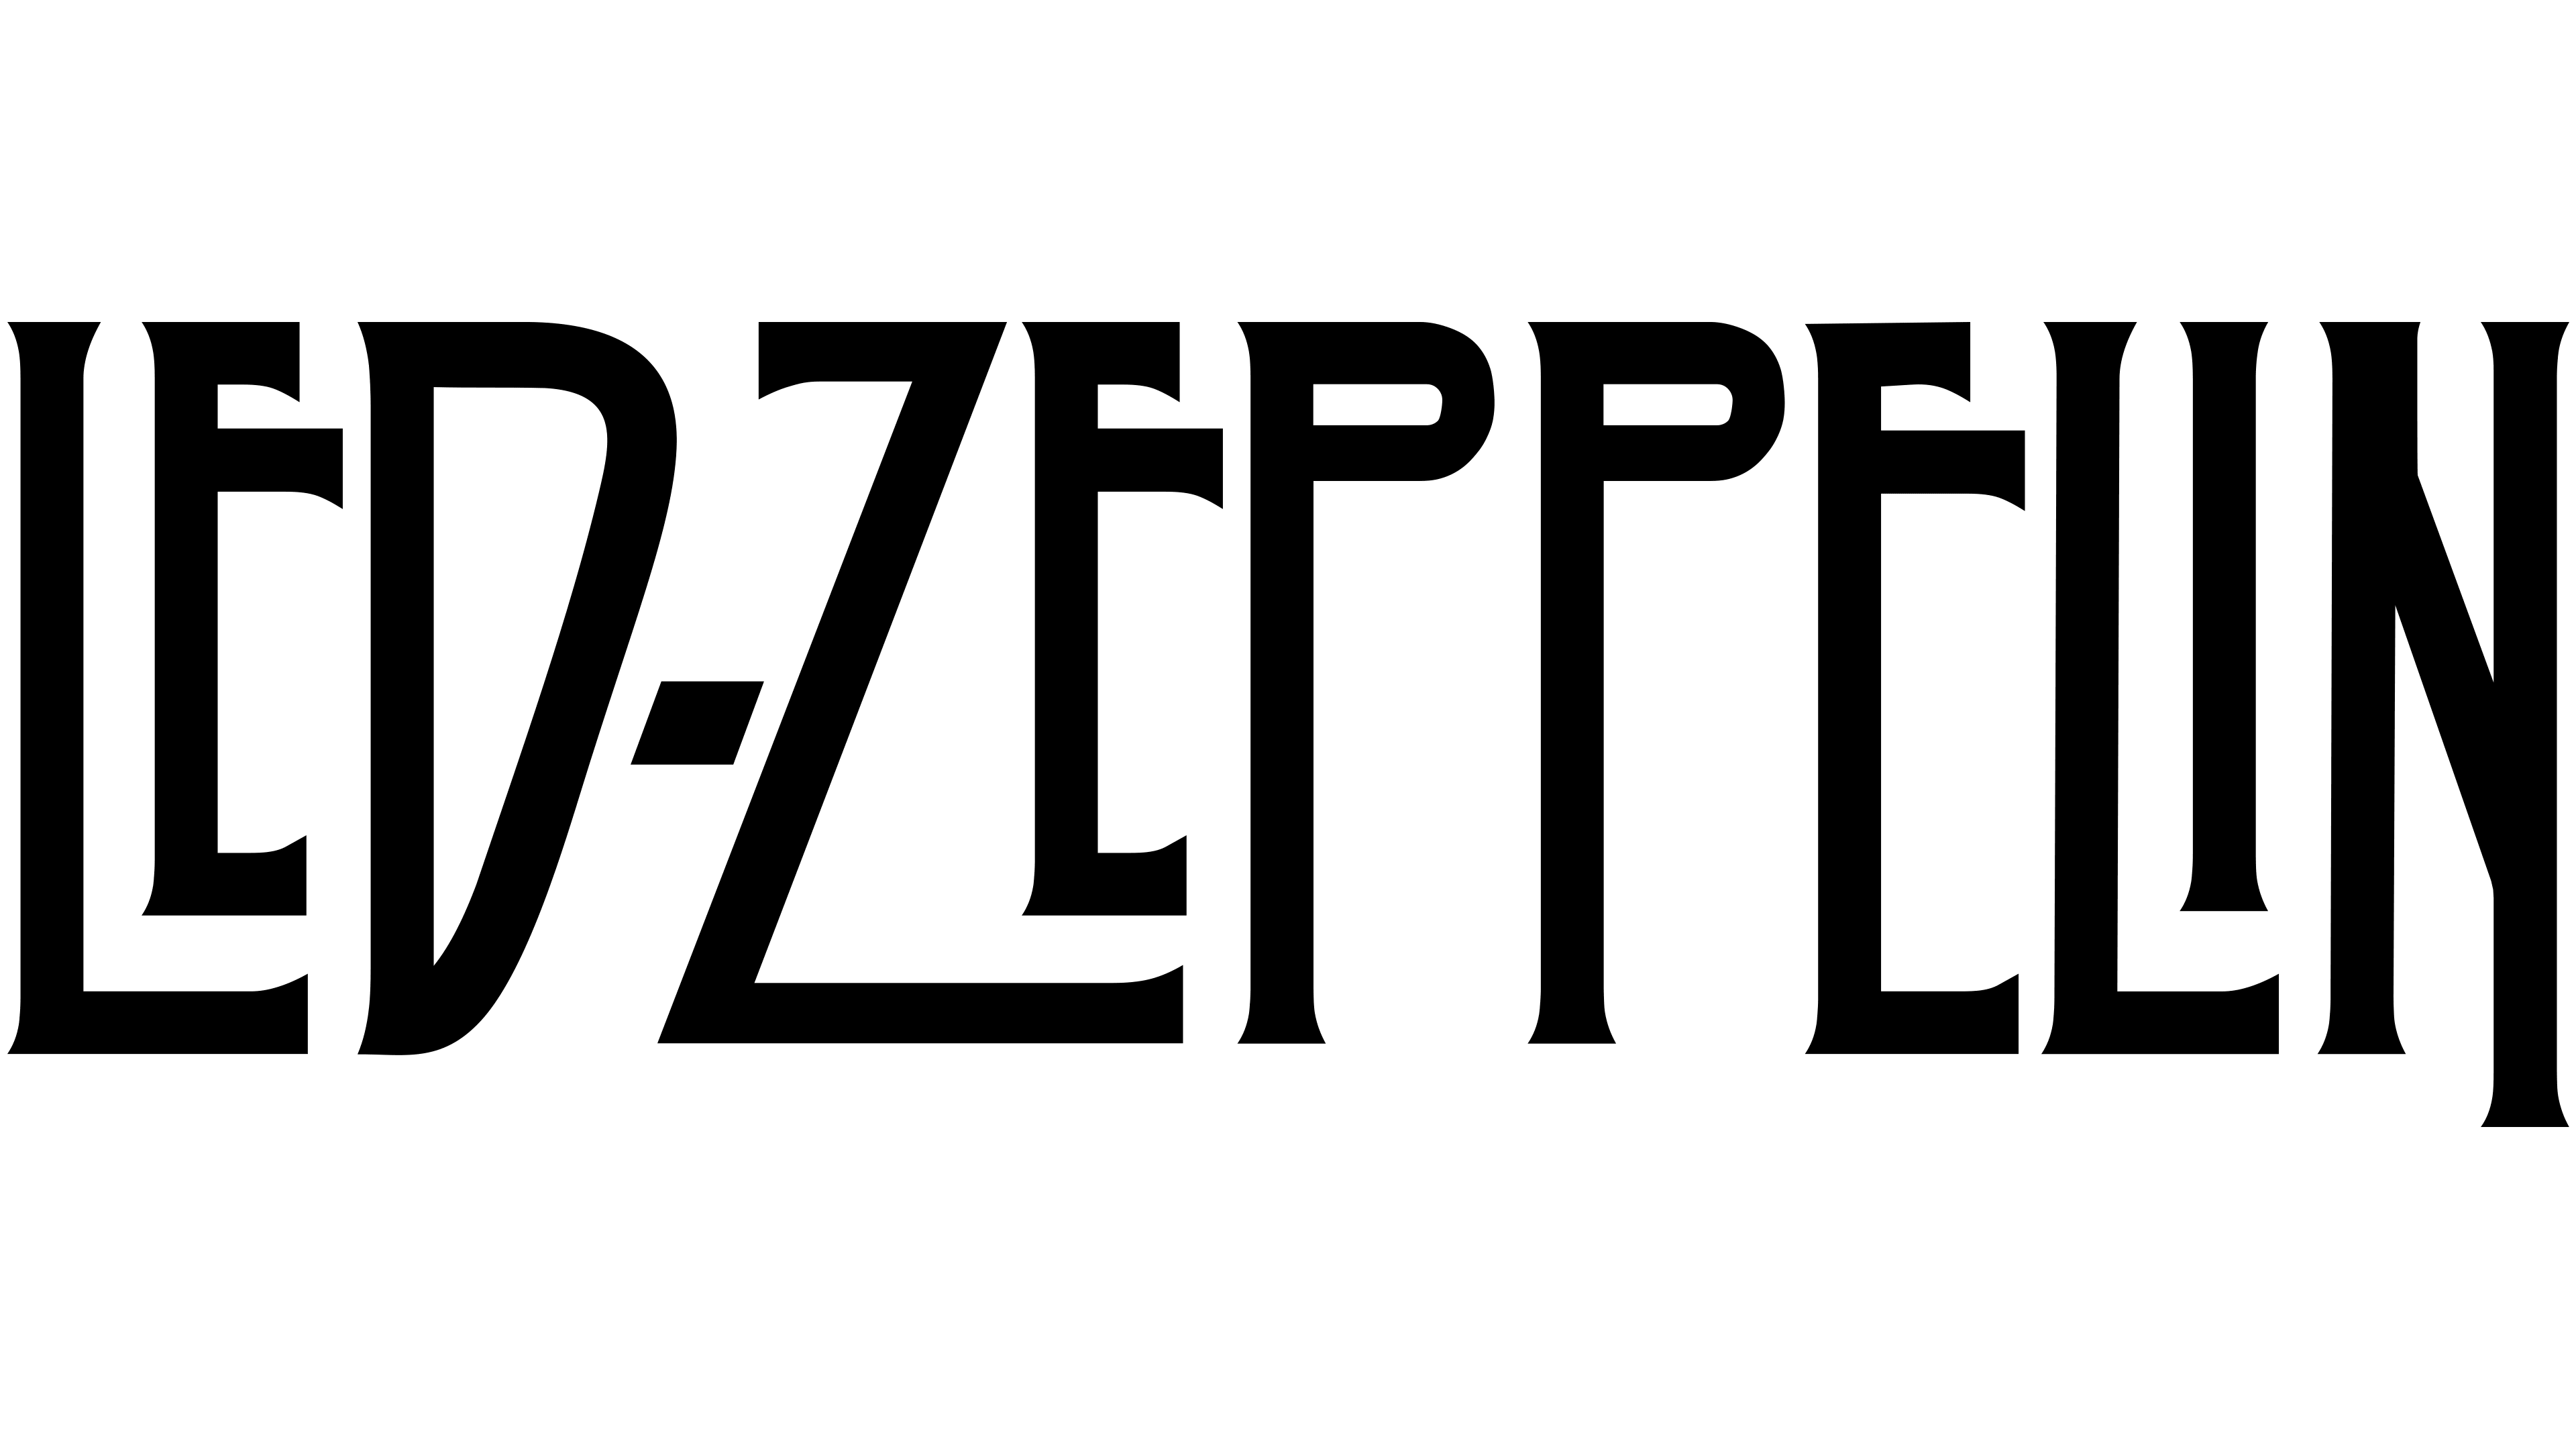 Imagem da banda Led Zeppelin